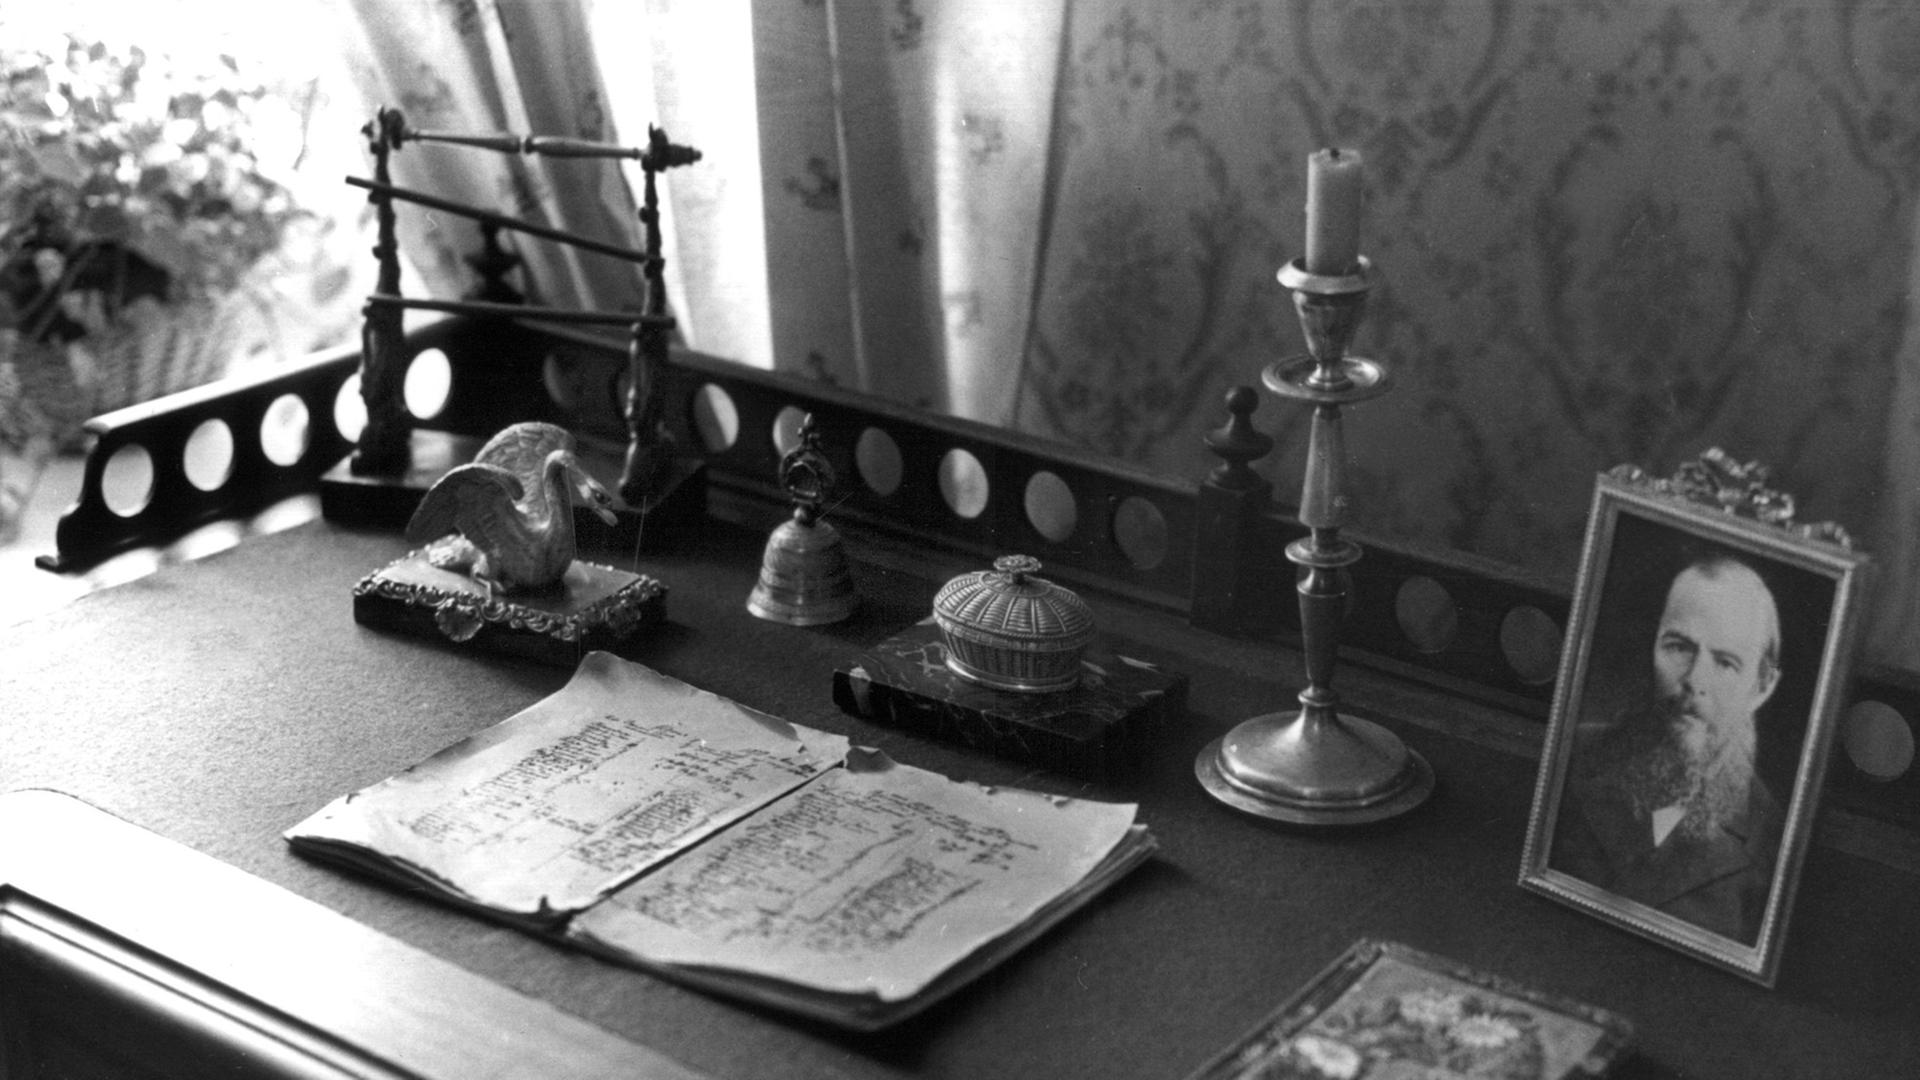 Der Schreibtisch des russischen Dichters Fjodor Michailowitsch Dostojewski im Museum in der Kusnetschni Straße in Sankt Petersburg. (Aufnahme vom Januar 1992). Dostojewski wurde am 11. November 1821 in Moskau geboren und starb am 9. Februar 1881 in St. Petersburg. Zu seinen bekanntesten Werken gehören "Die Brüder Karamasow", "Schuld und Sühne" und "Der Idiot".